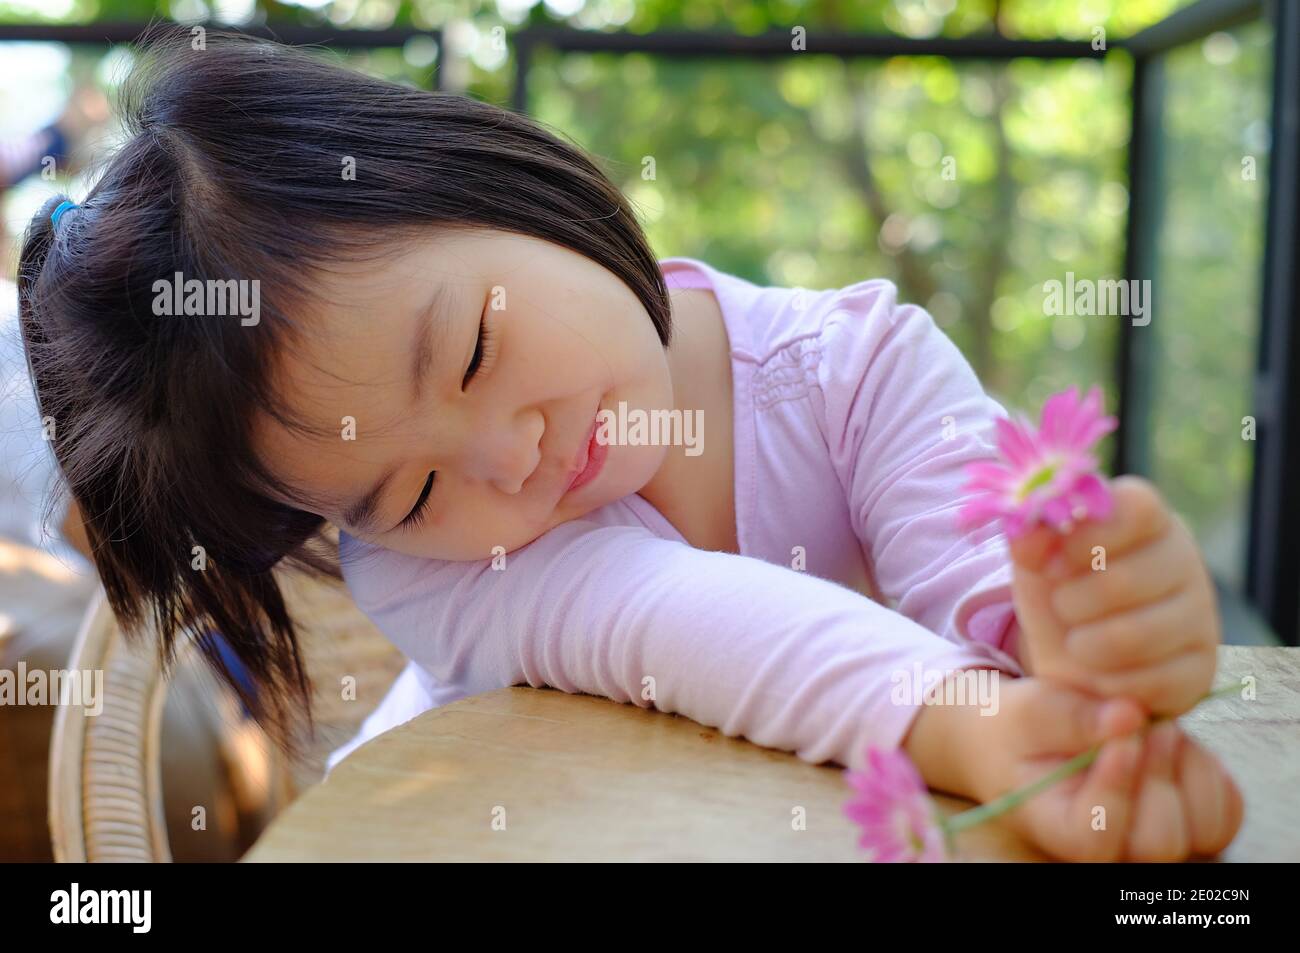 Une jolie petite fille asiatique timide assise près d'une table dans un café, se détendant et apprécier ses jolies fleurs roses, souriant. Banque D'Images